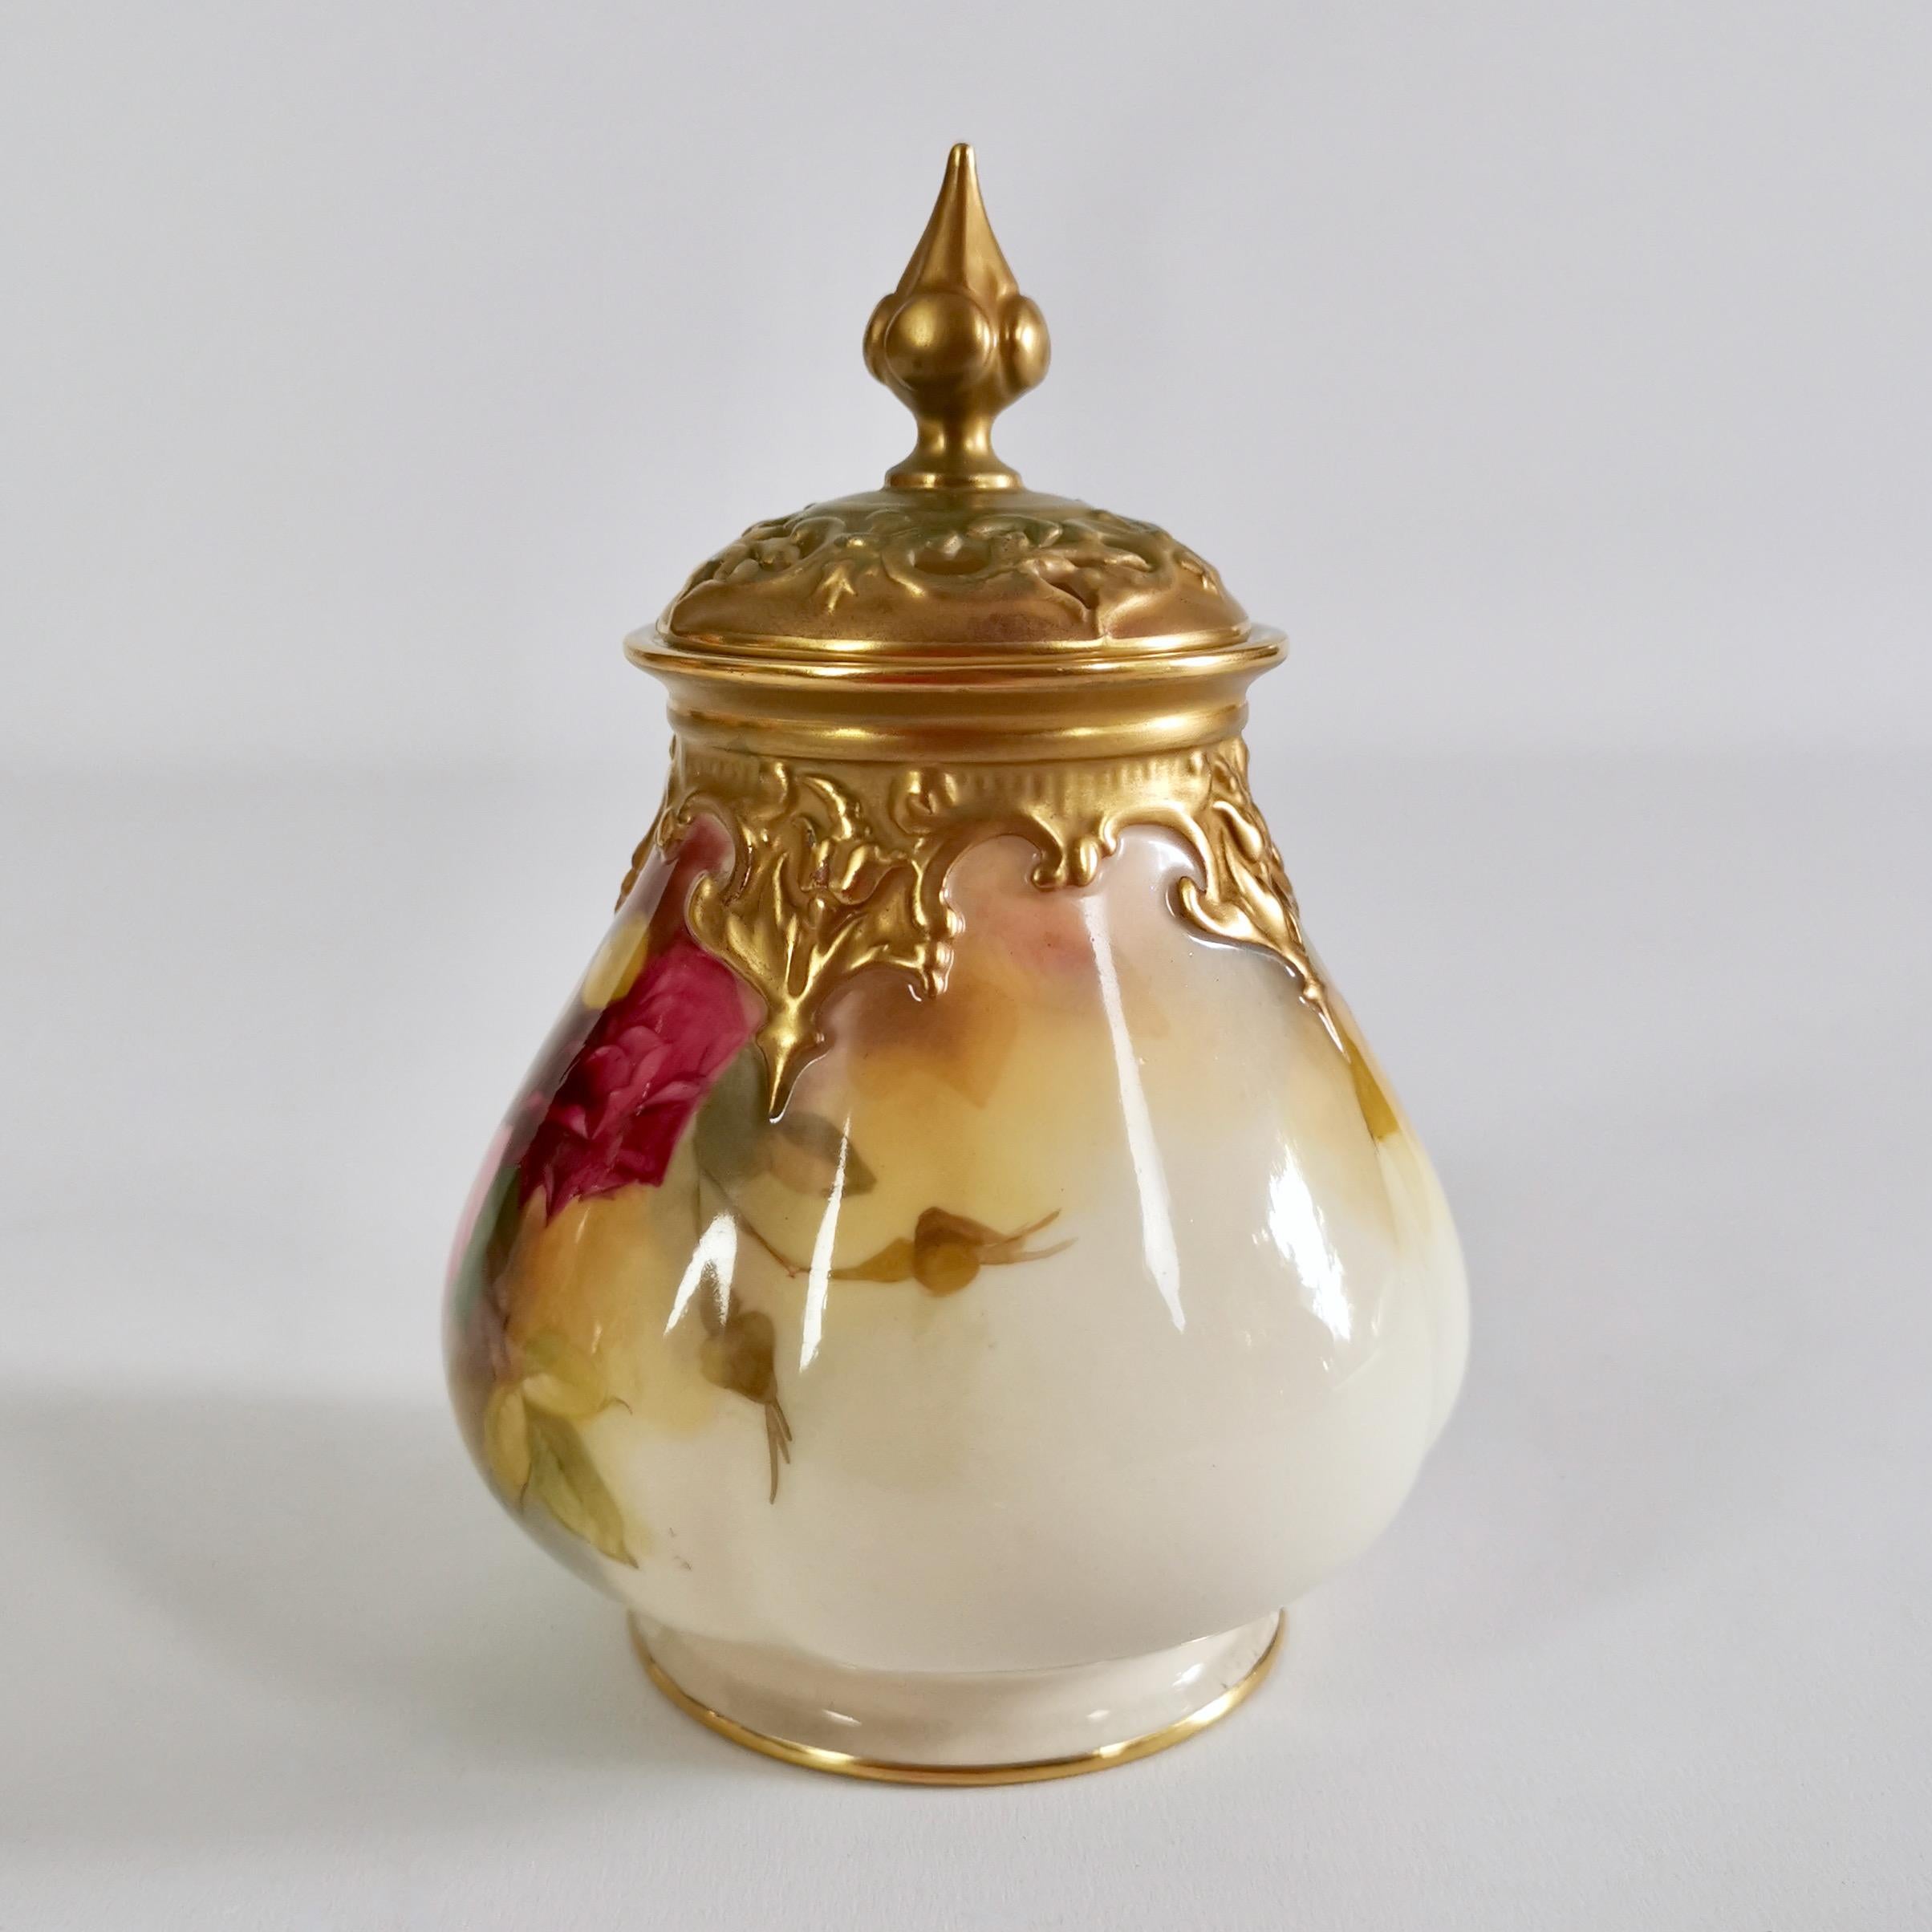 Il s'agit d'un très beau petit vase à pot-pourri avec couvercle, fabriqué par Royal Worcester en 1923. L'urne a un fond ivoire avec des roses Hadley exceptionnellement belles peintes à la main.

Les vases à pot-pourri étaient destinés à contenir un